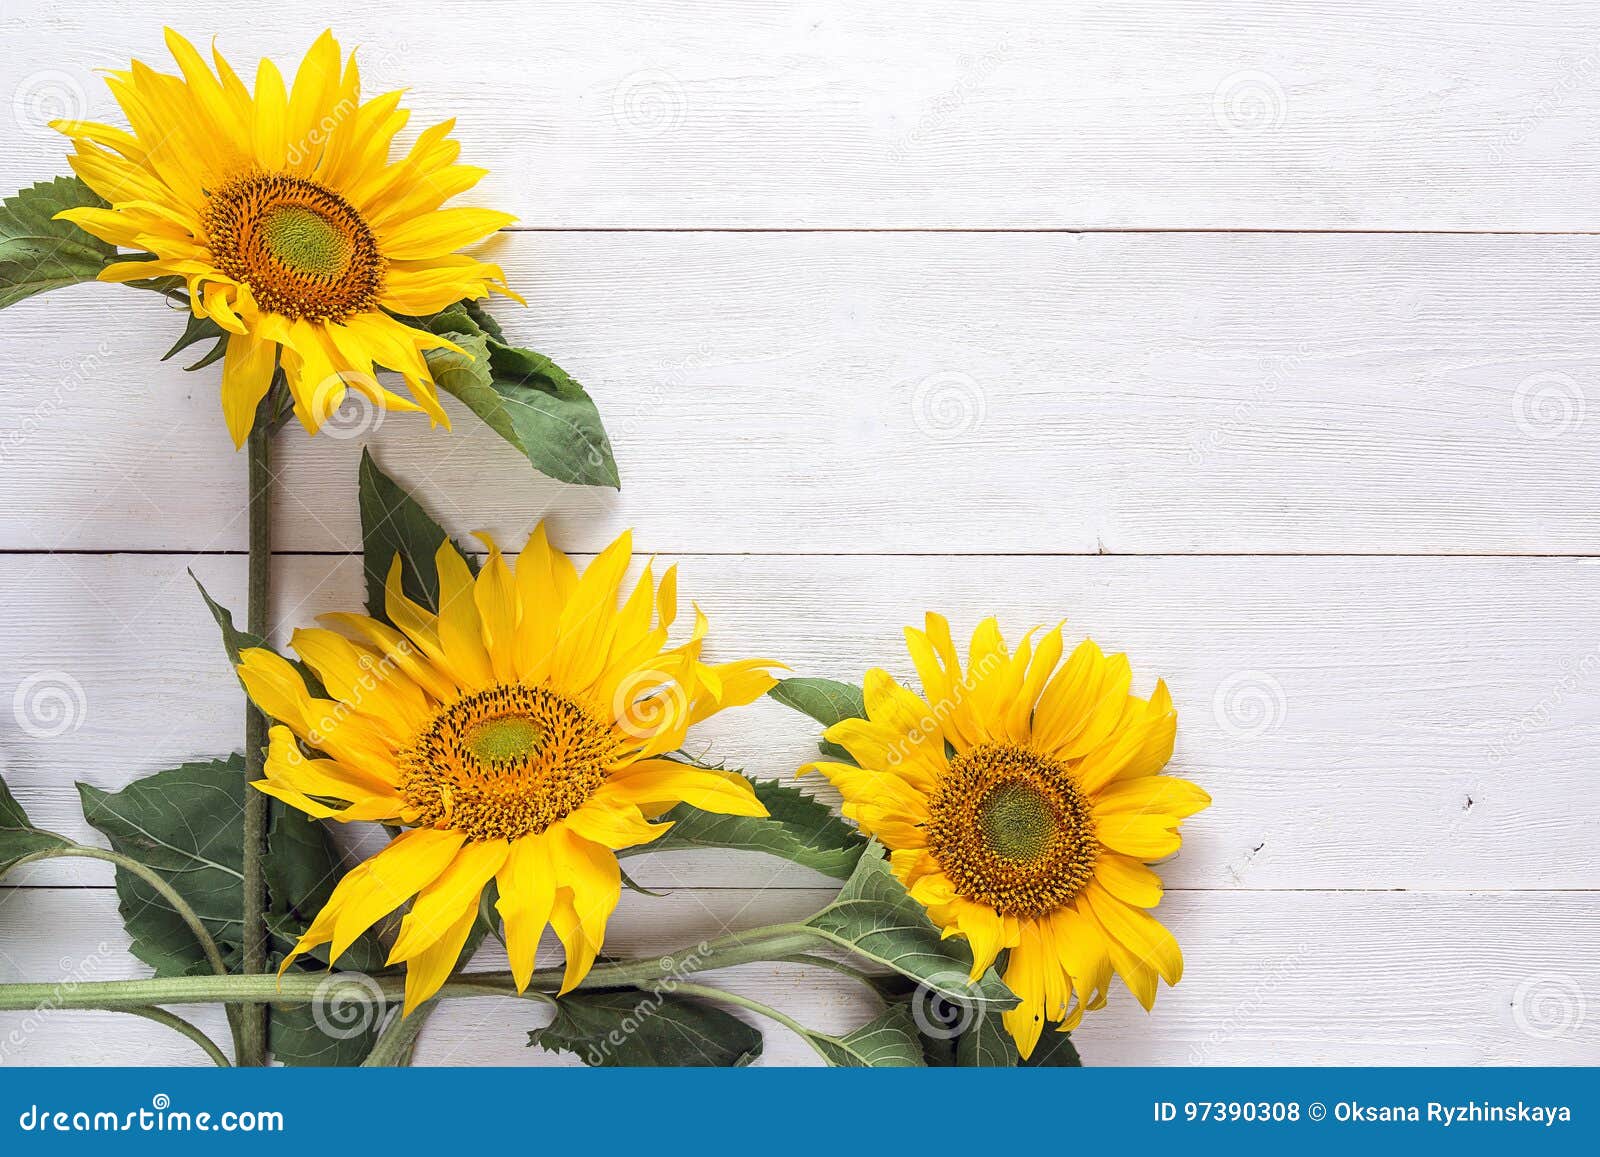 Hintergrund Mit Einem Blumenstrauß Von Gelben Sonnenblumen ...